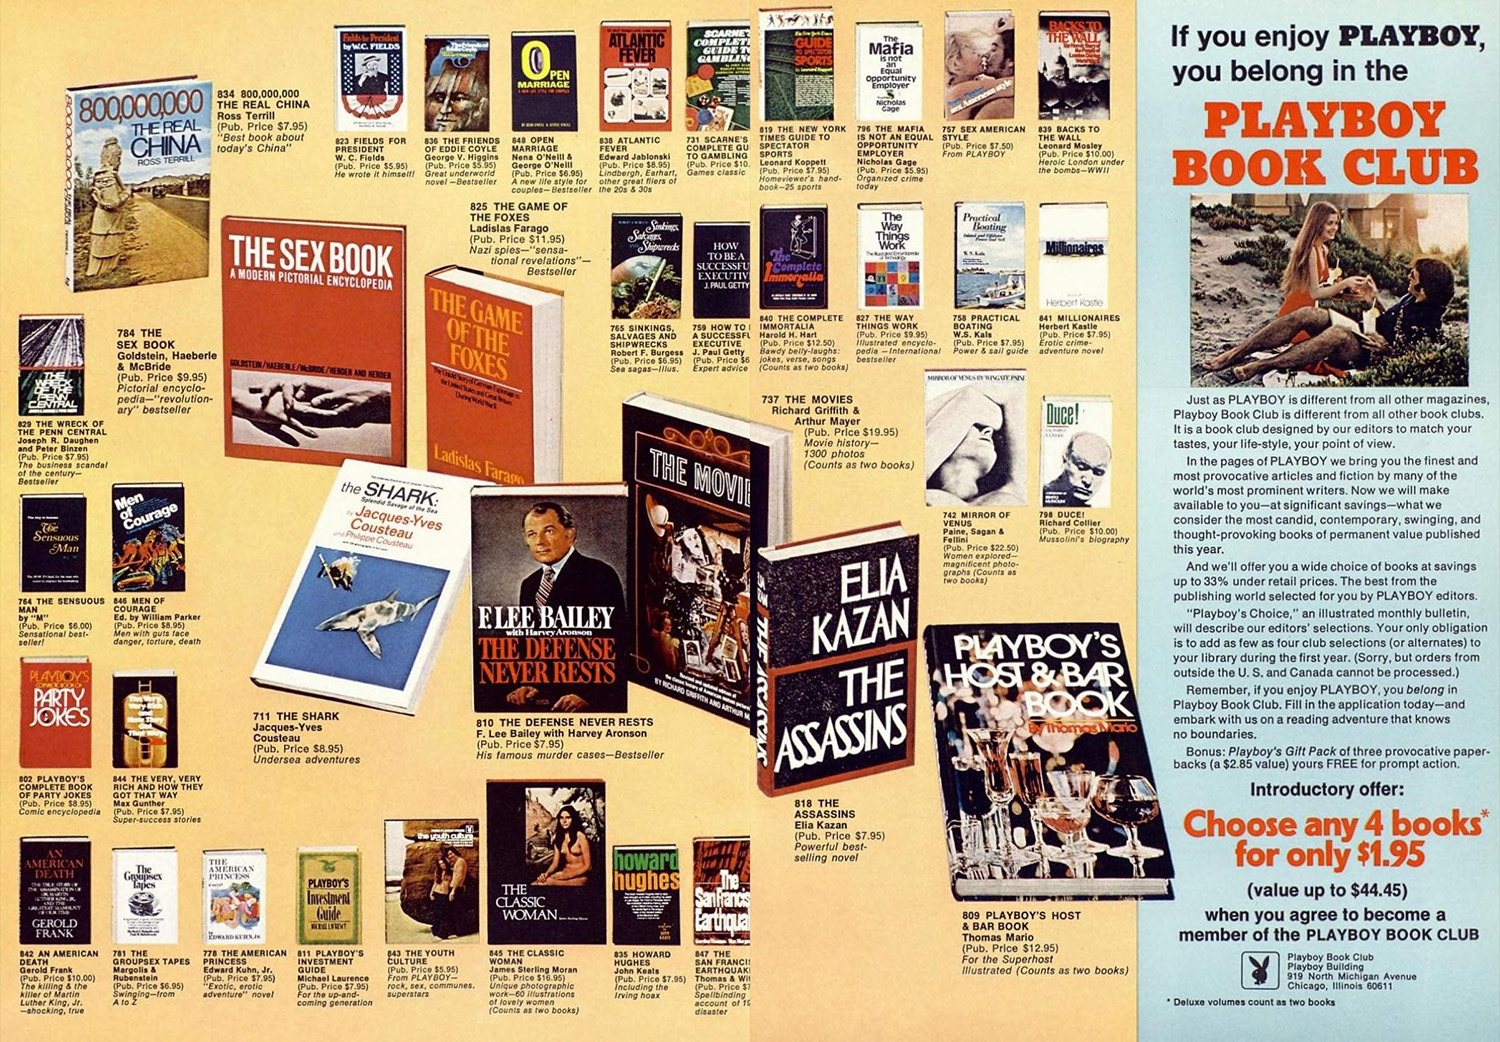 1972 Playboy book club